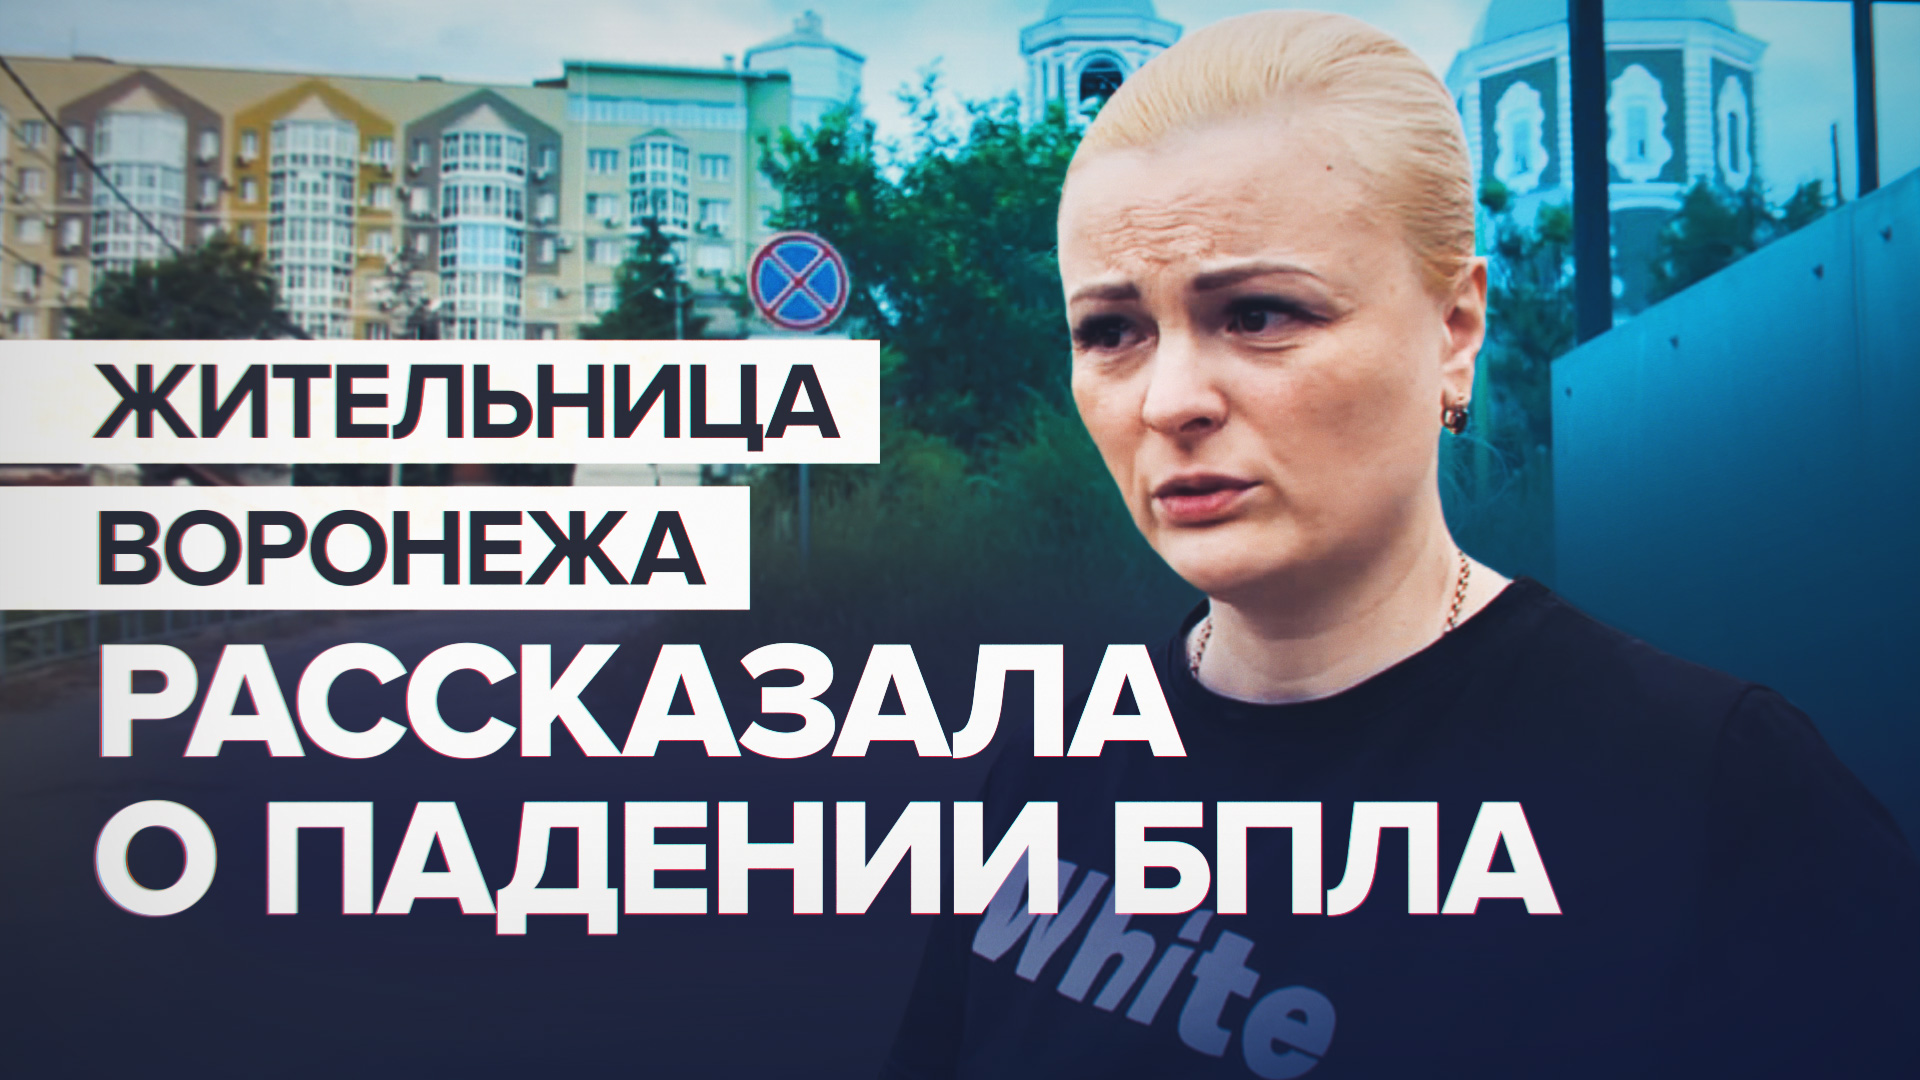 «Что-то загудело, взрыв, чёрный столб дыма»: жительница Воронежа рассказала о падении БПЛА